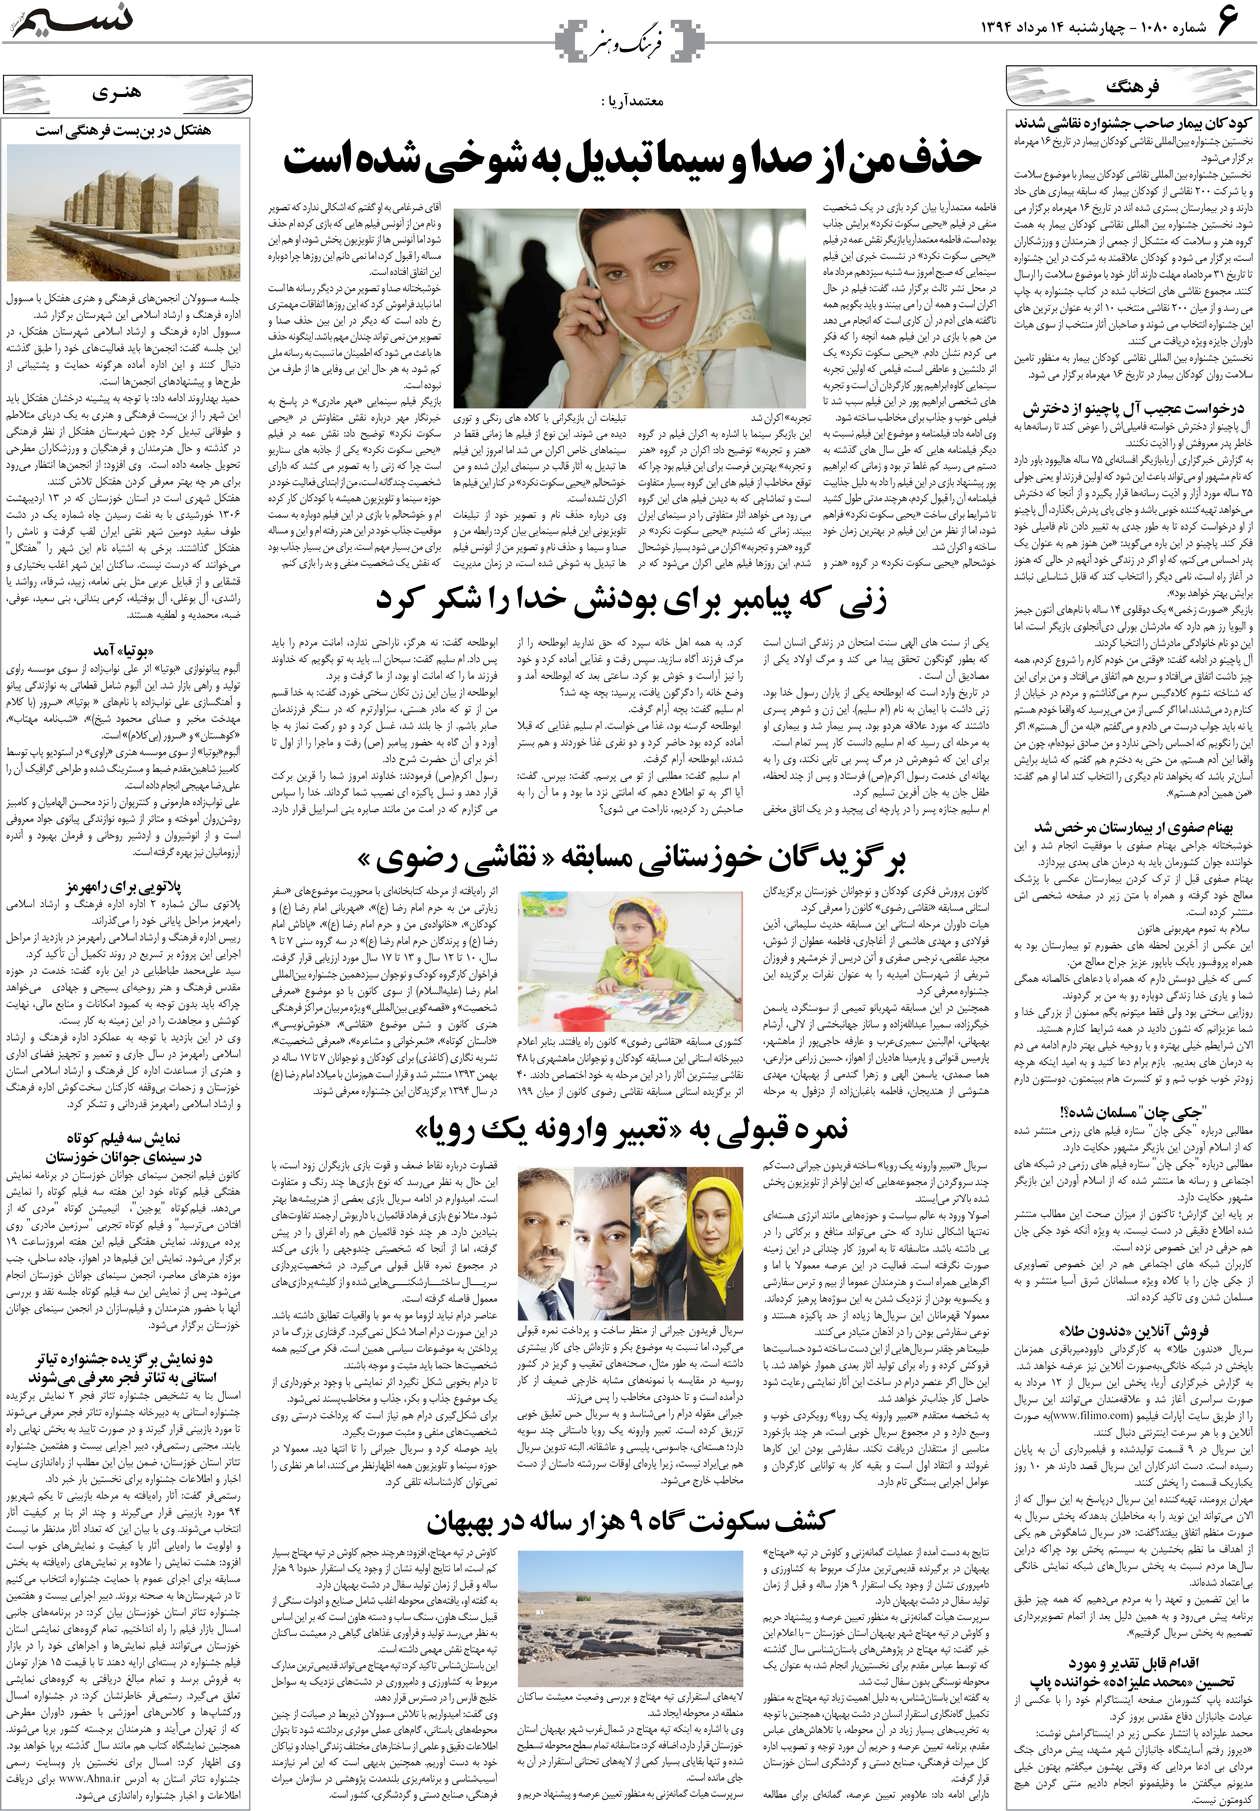 صفحه فرهنگ و هنر روزنامه نسیم شماره 1080